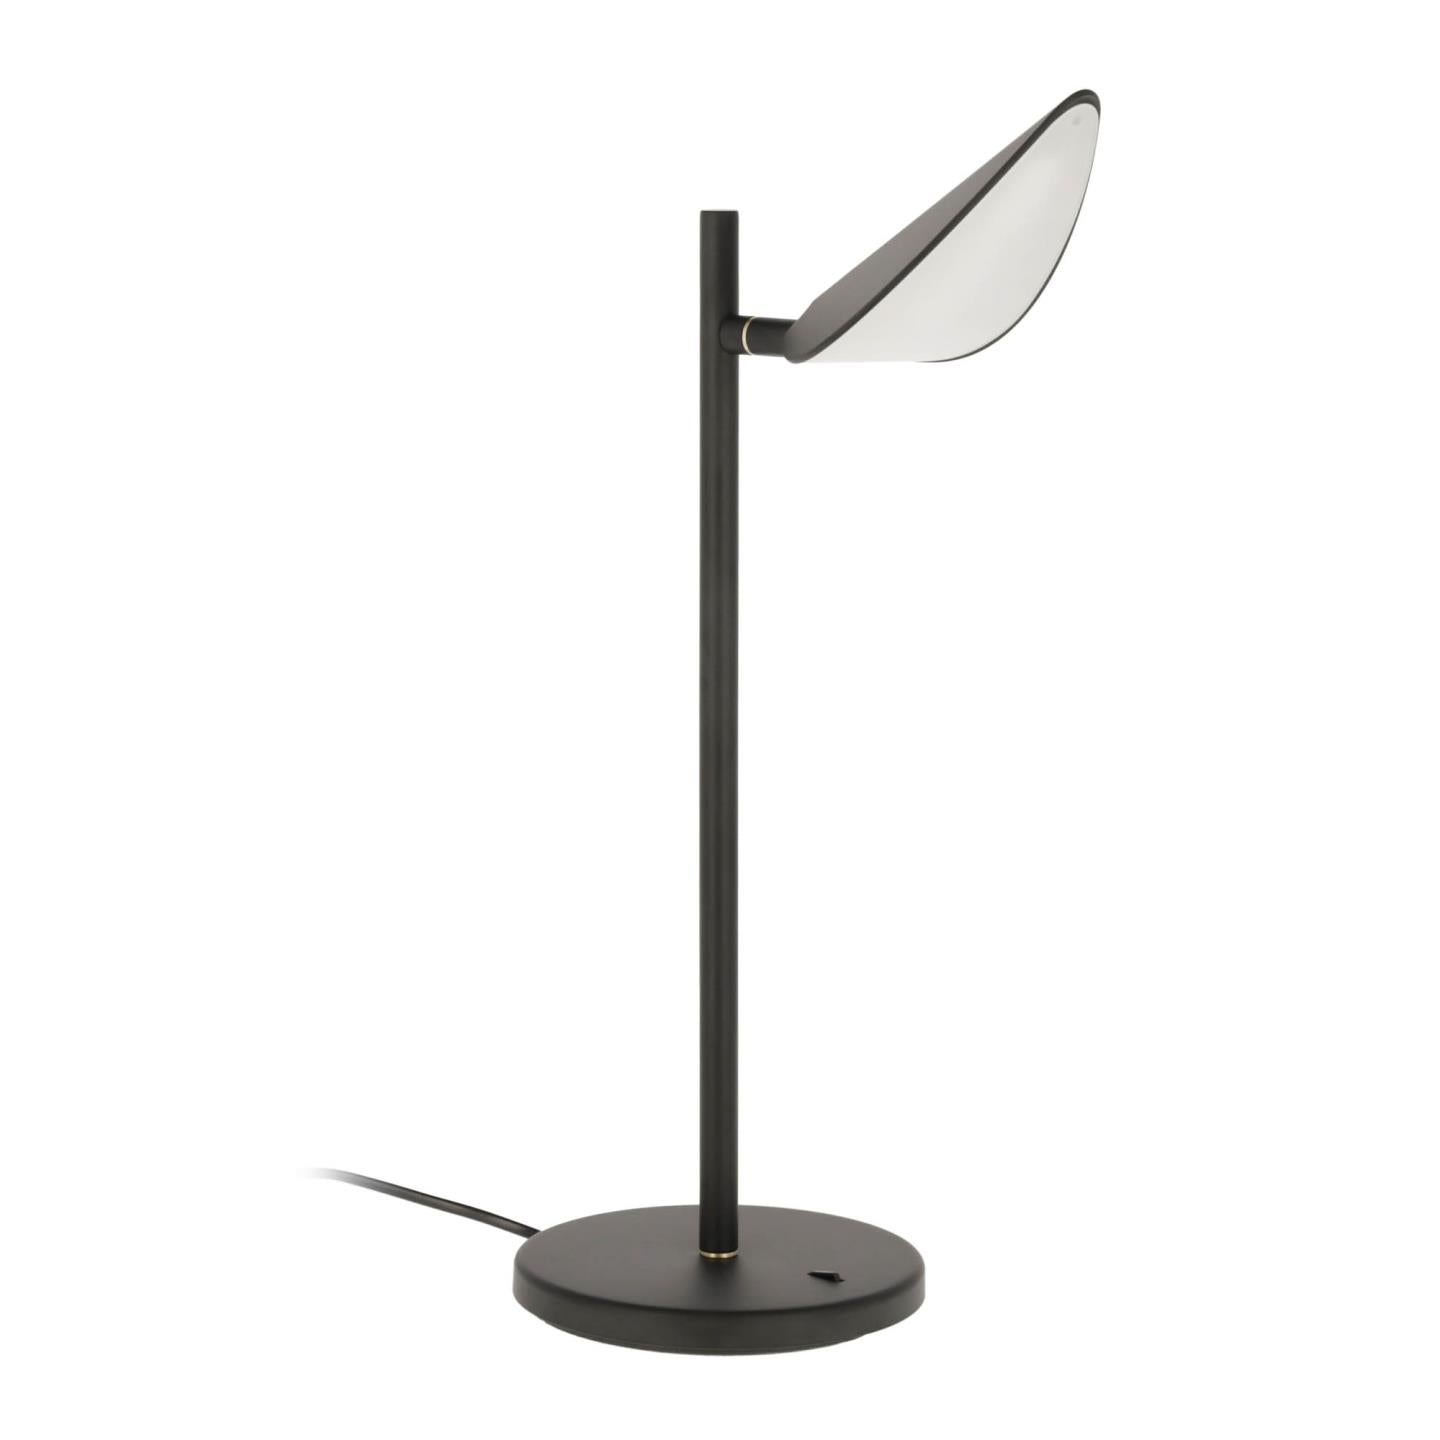 Veleira steel table lamp